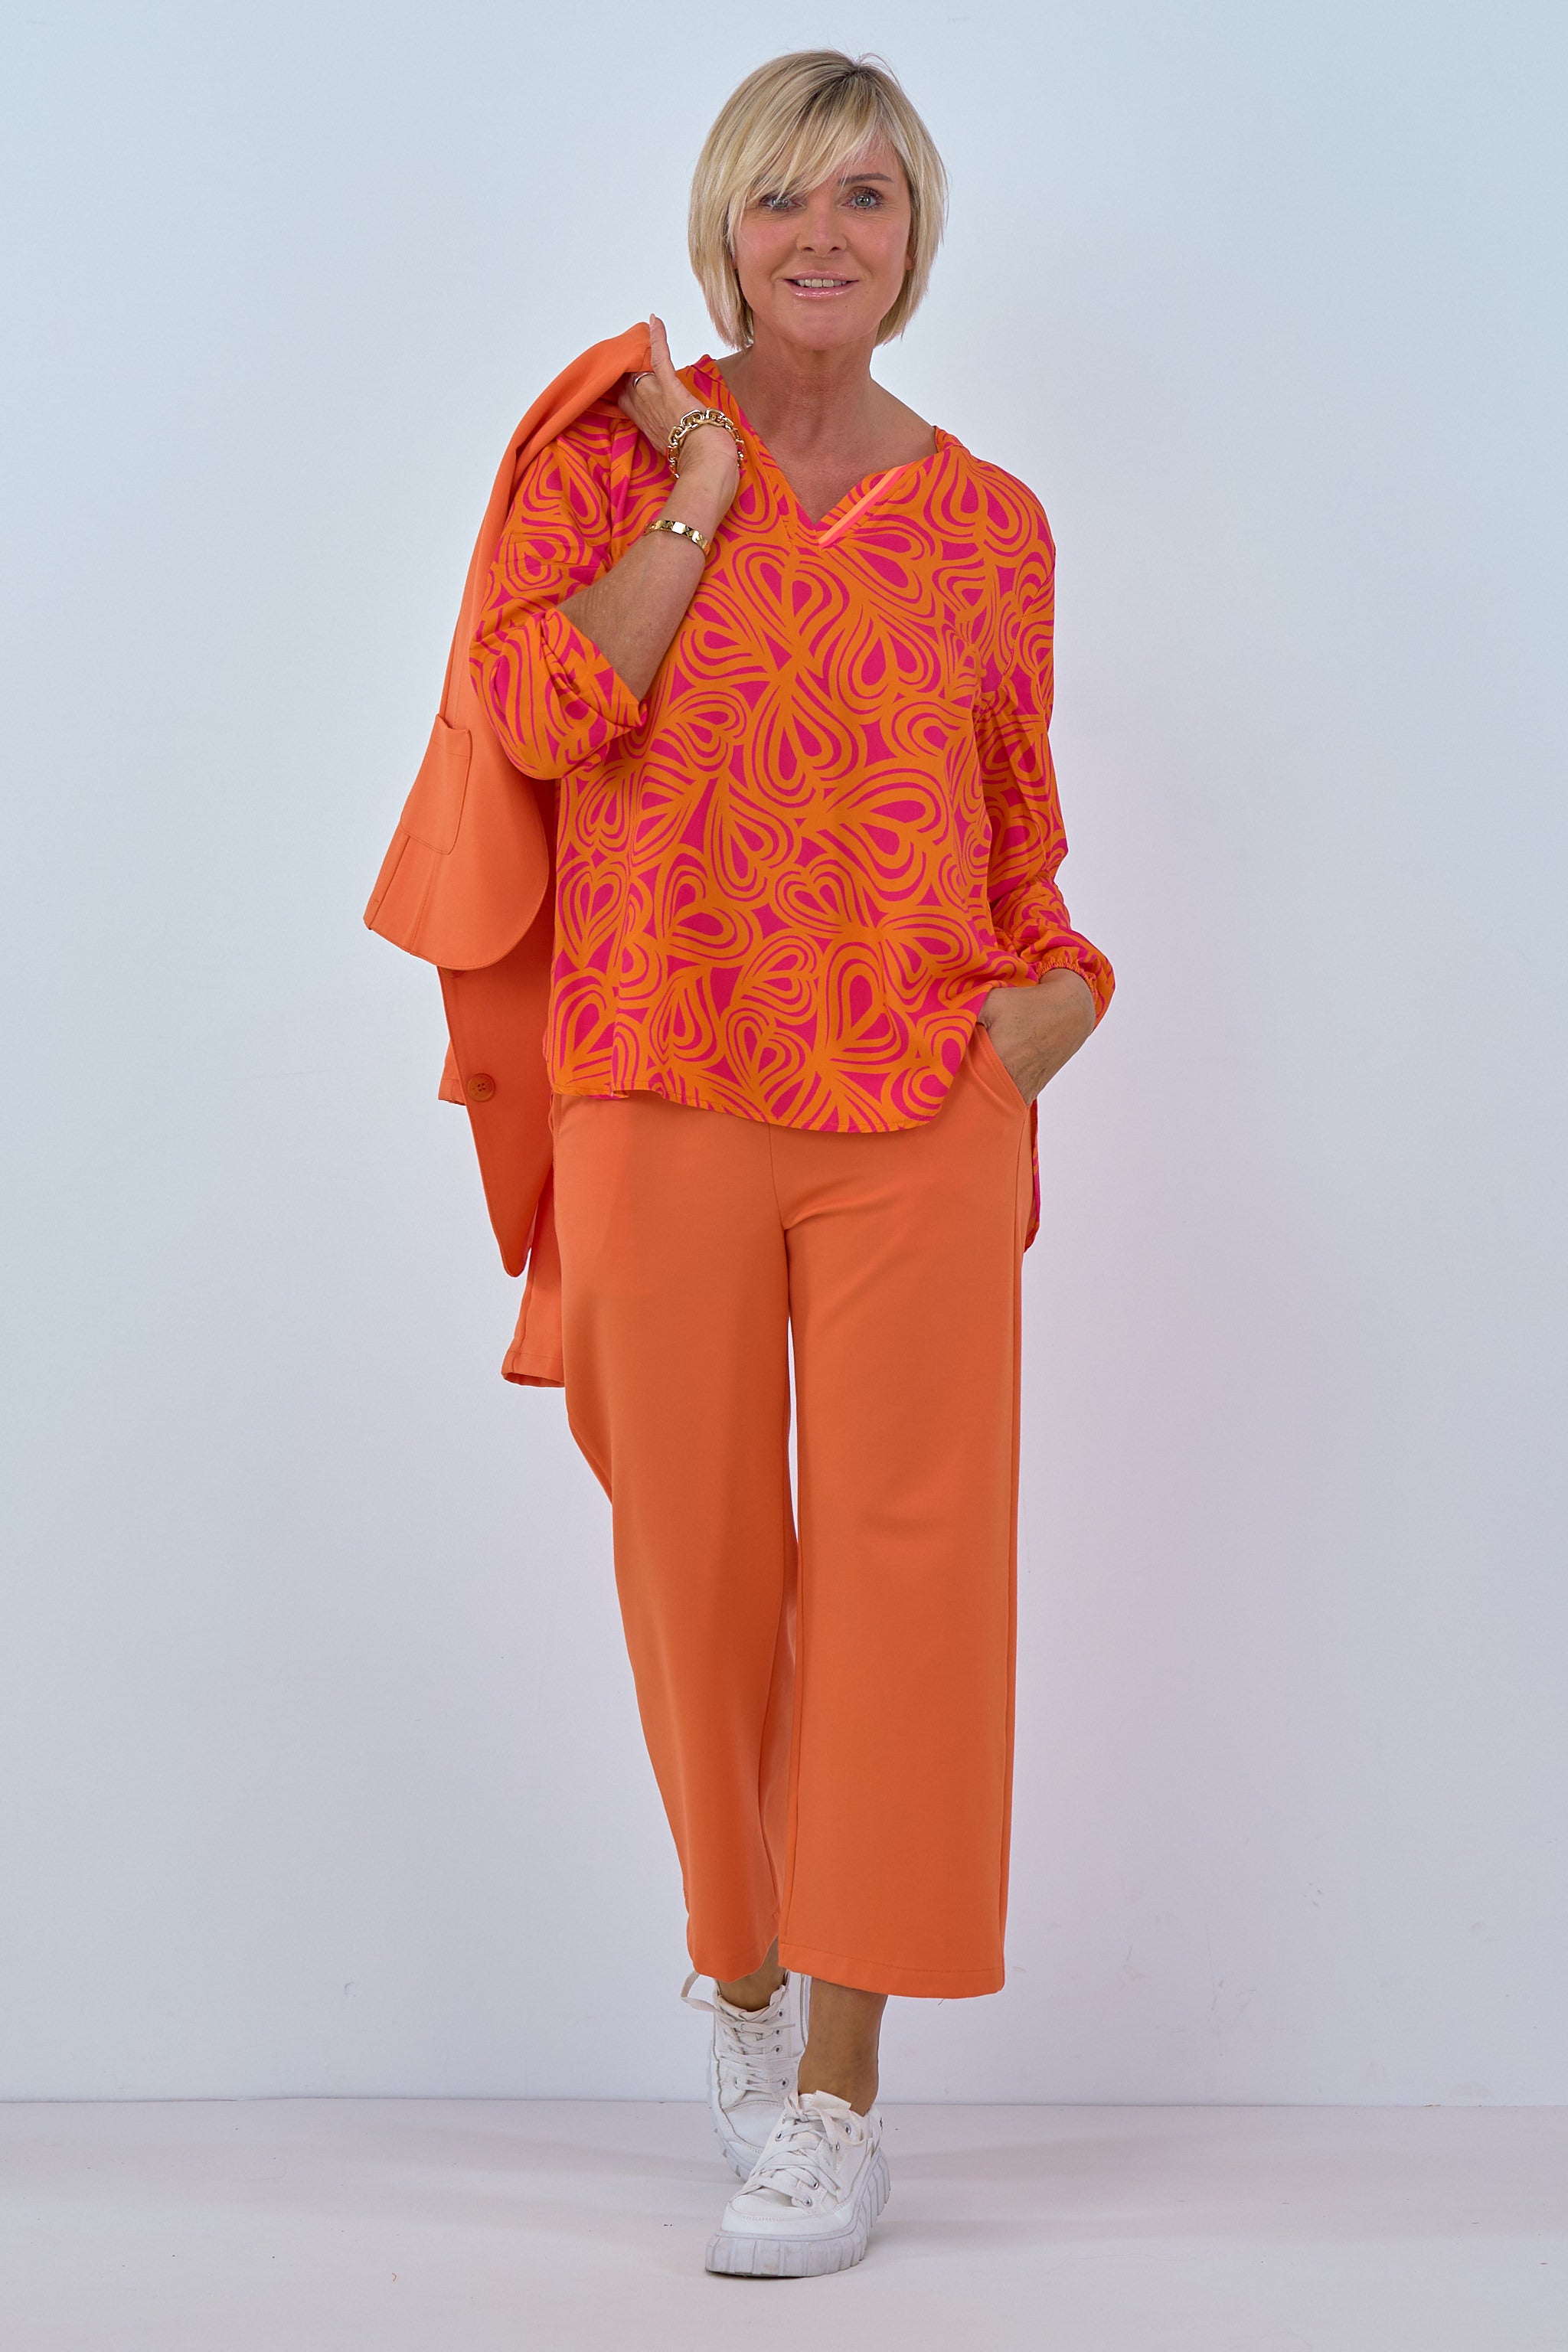 Bluse mit Phantasy-Muster, orange-pink